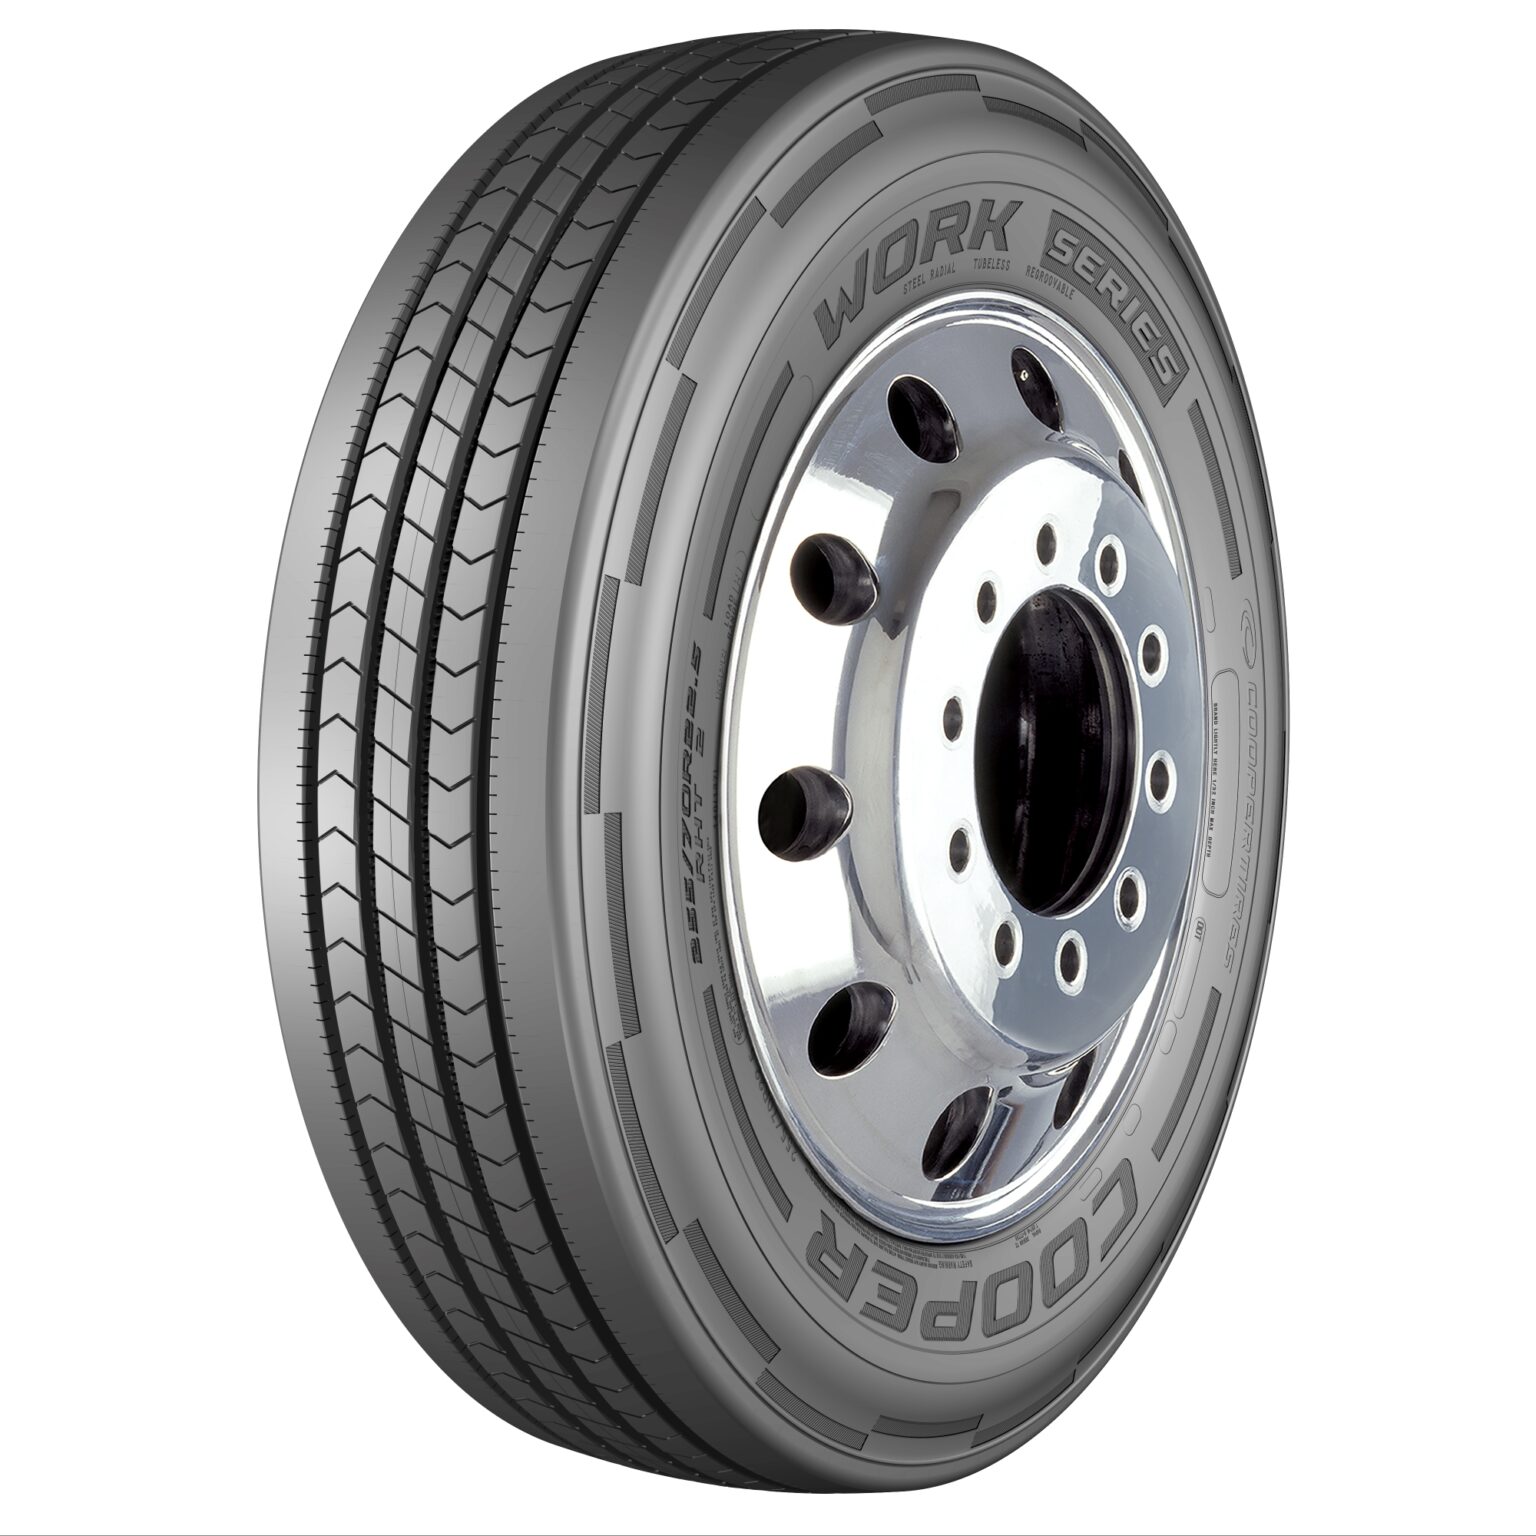 O novo pneu de reboque Cooper Work Series para as aplicações mais abrasivas